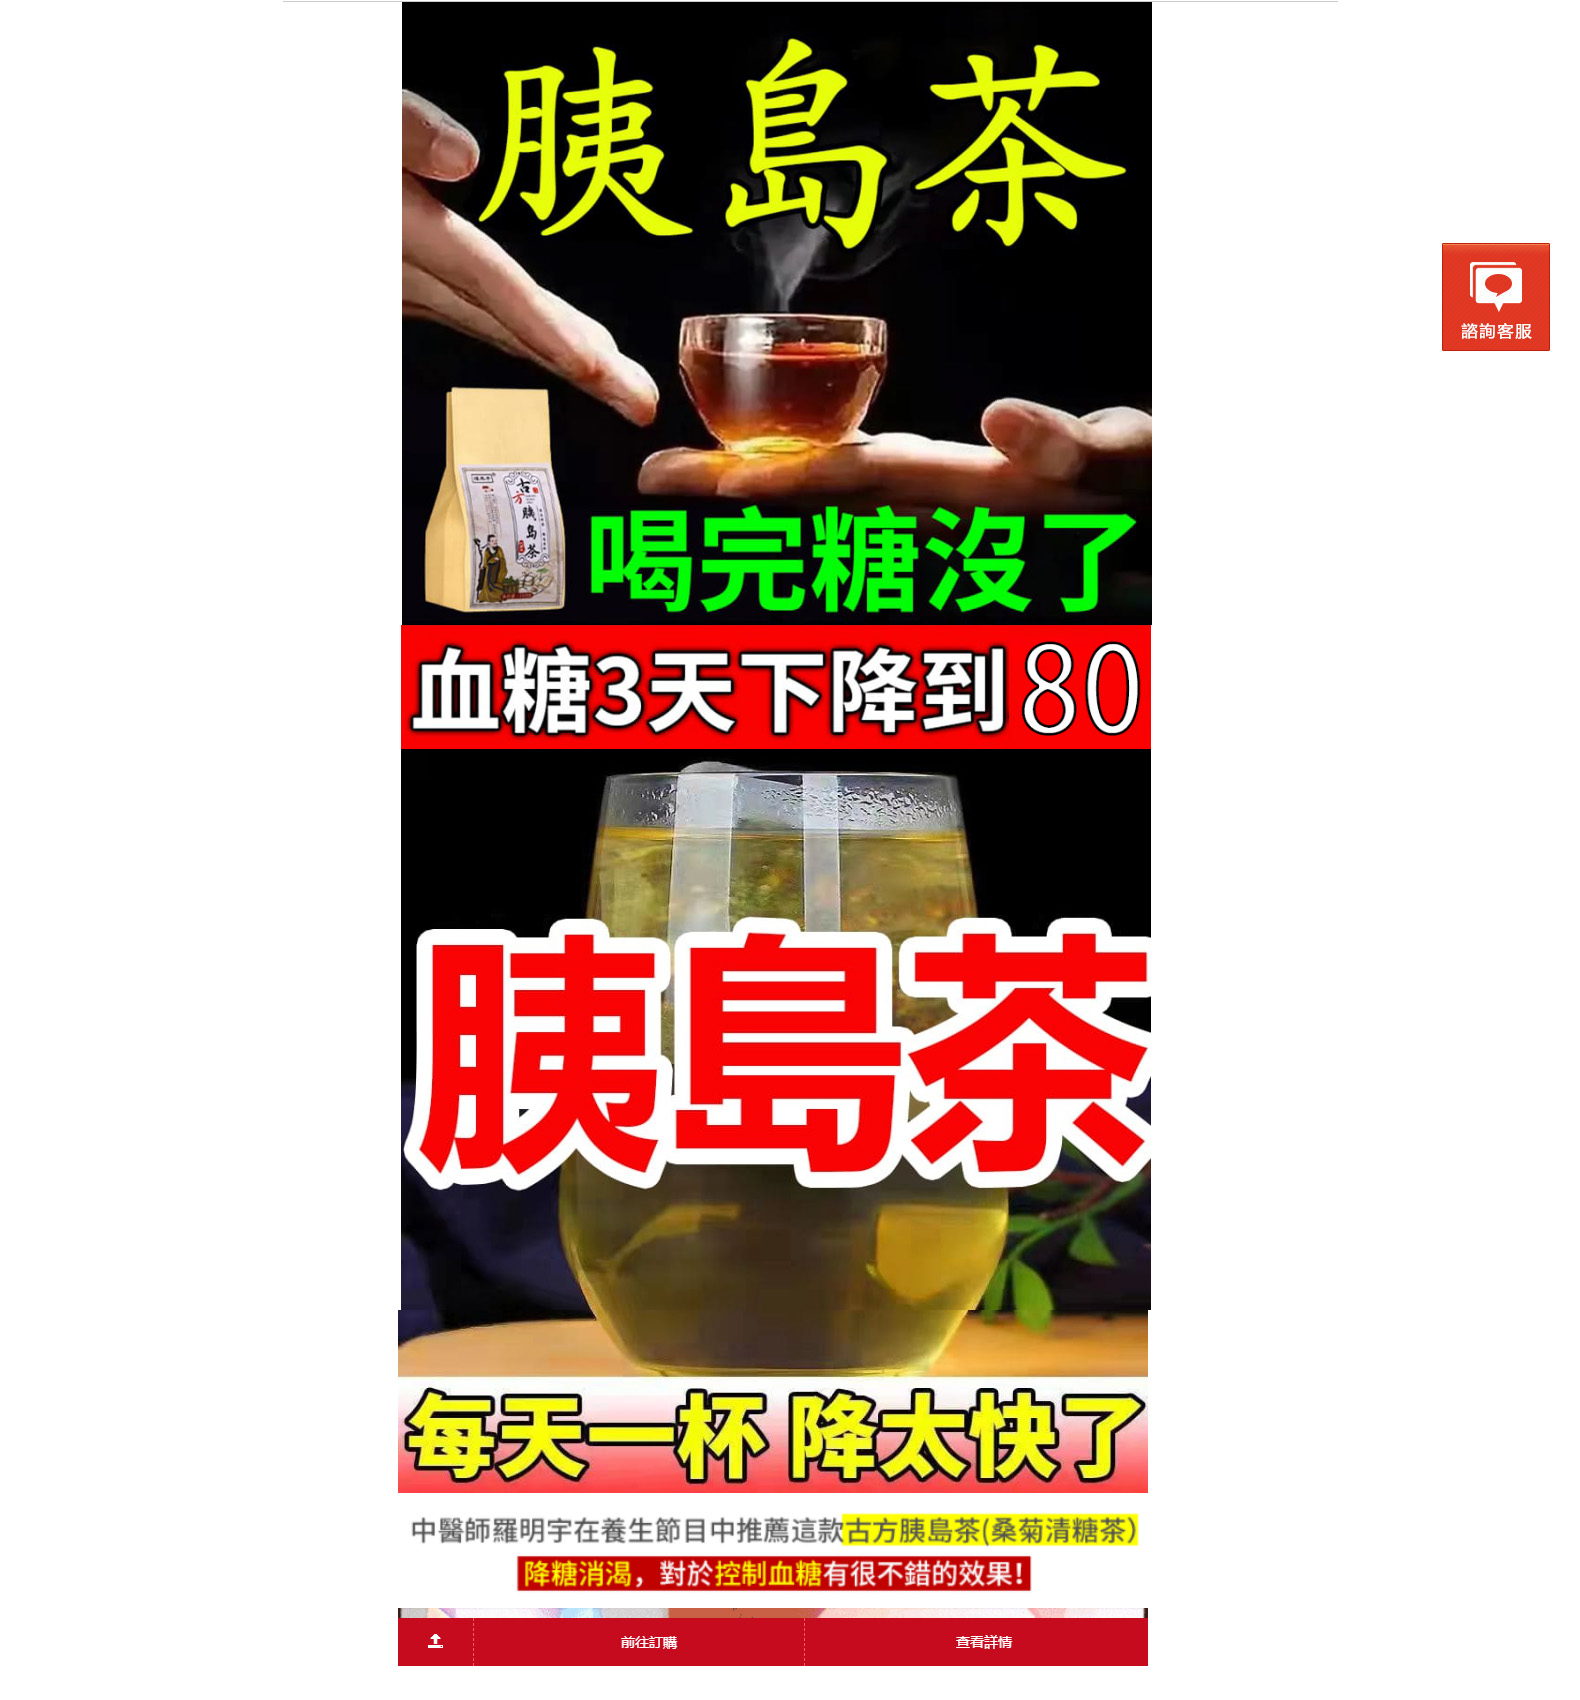 台灣國寶雞角刺官網-糖尿病治療,降血糖自療法,降血脂茶,降血壓茶飲